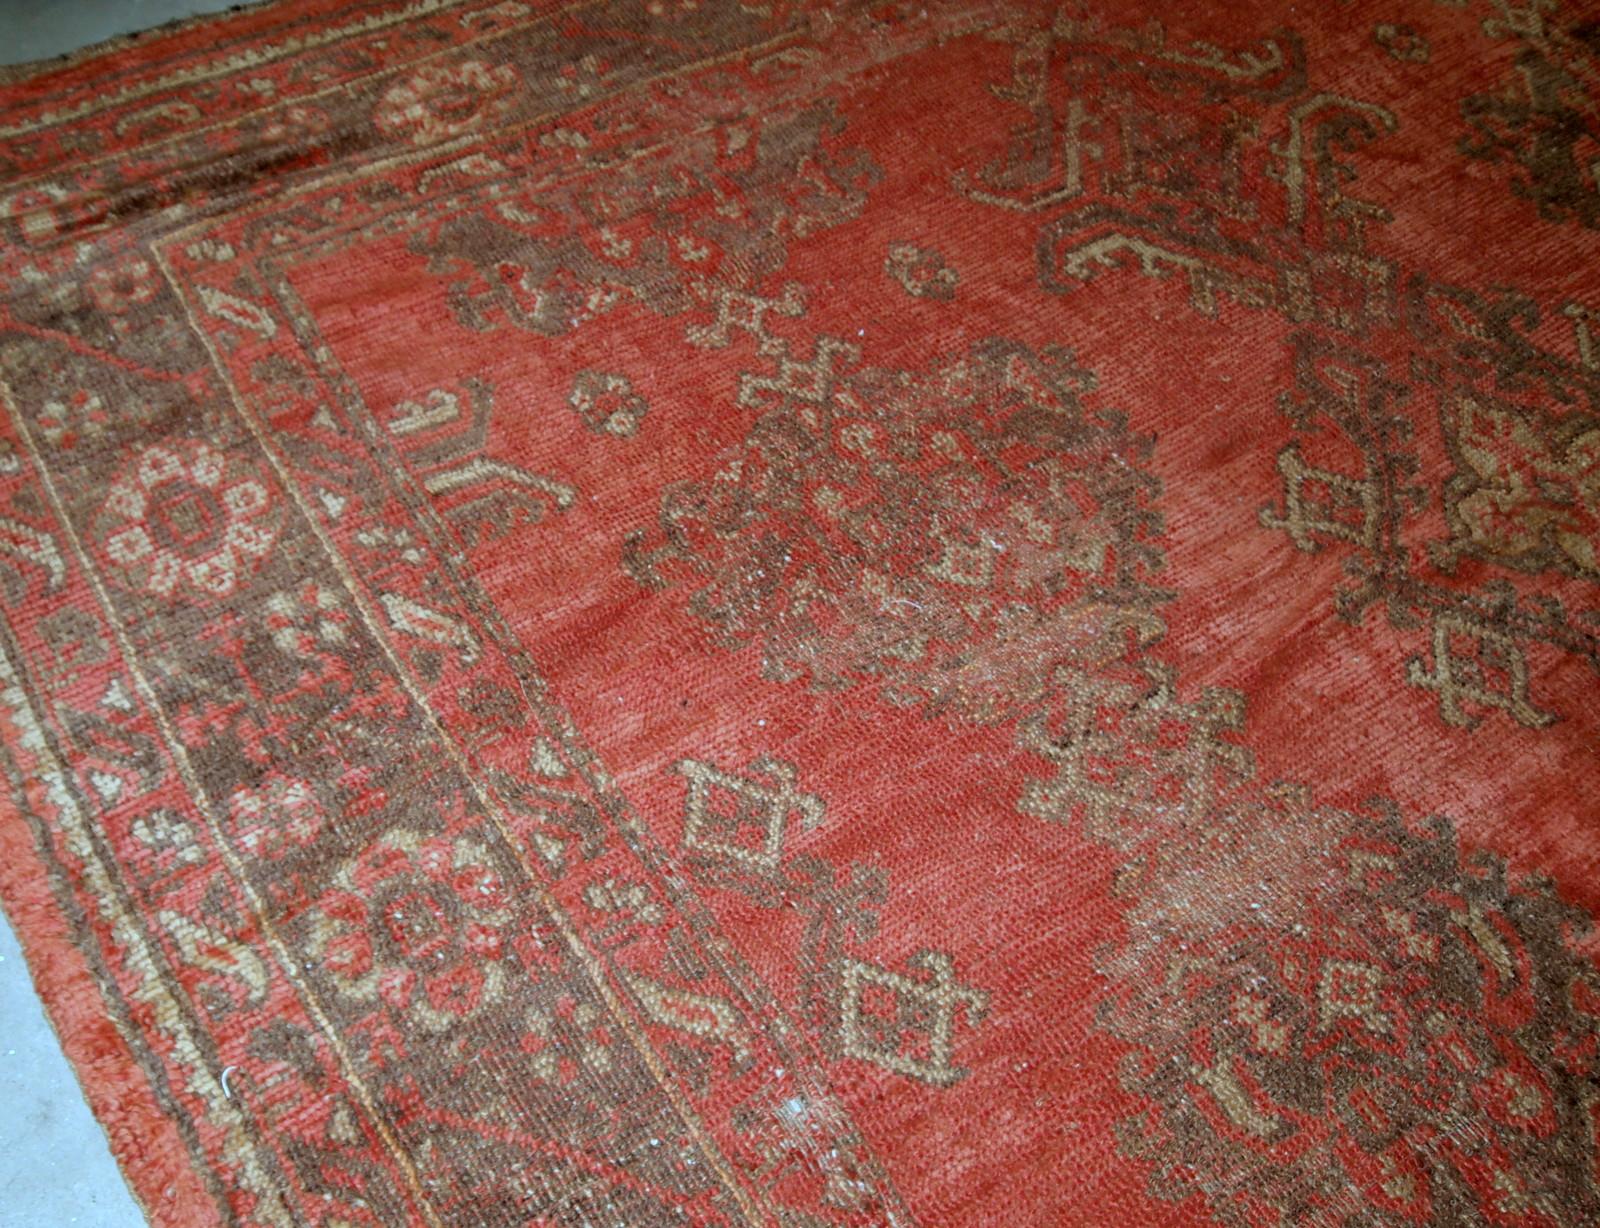 Antiker handgefertigter türkischer Teppich in Orange. Der Teppich ist aus dem Anfang des 20. Jahrhunderts im Originalzustand, er hat einige Altersspuren.

-zustand: original, einige Altersspuren,

-um: 1900,

-größe: 9' x 11' (274cm x